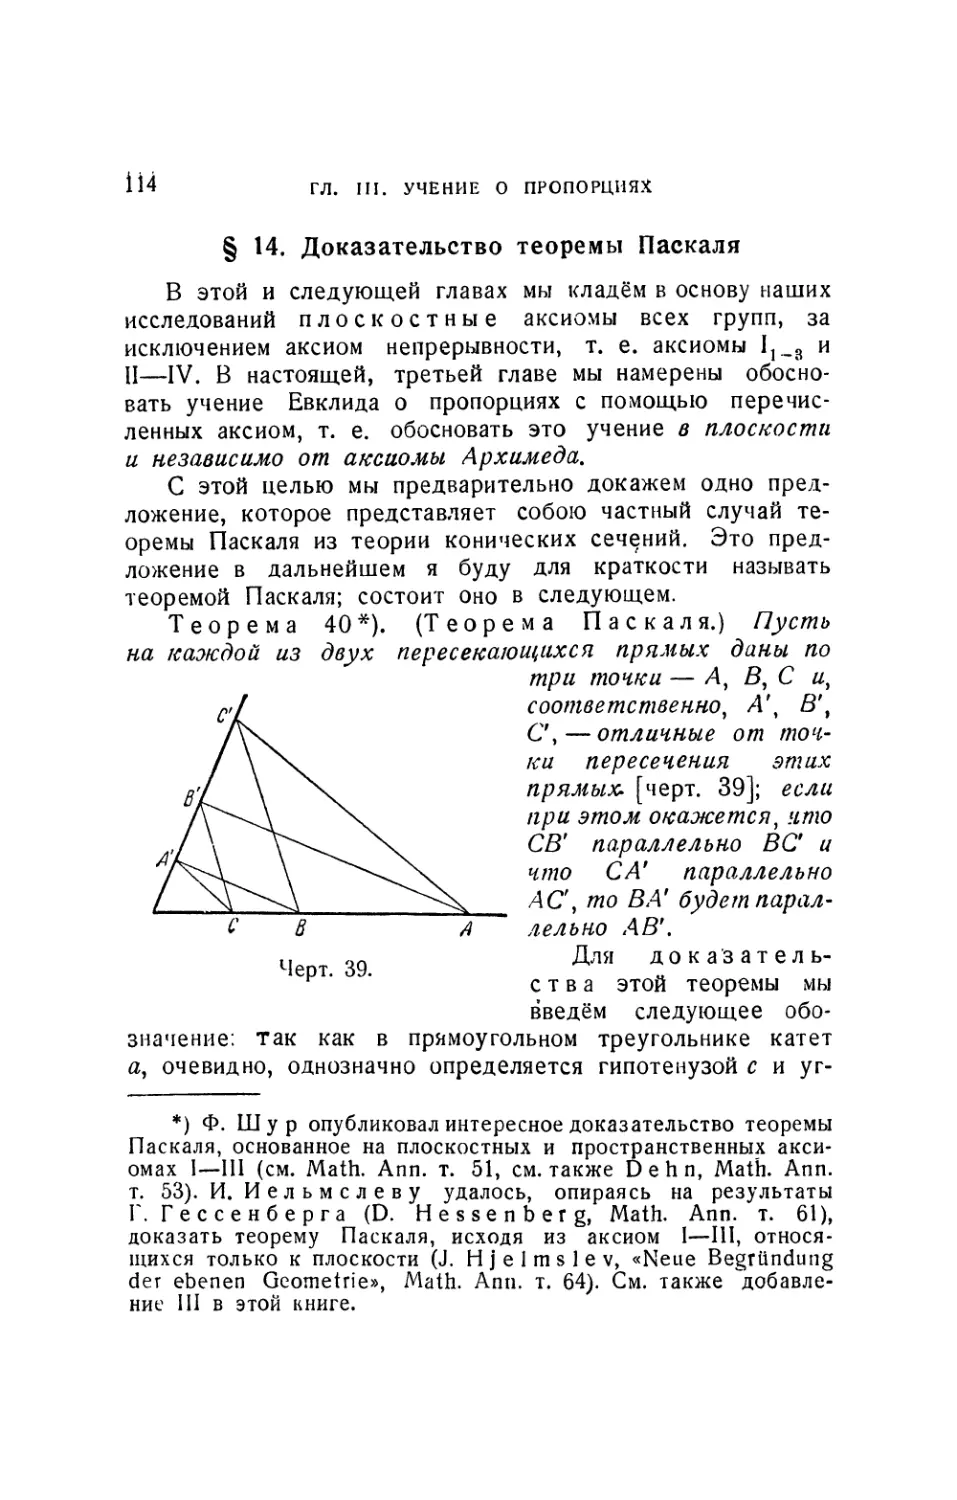 § 14. Доказательство теоремы Паскаля